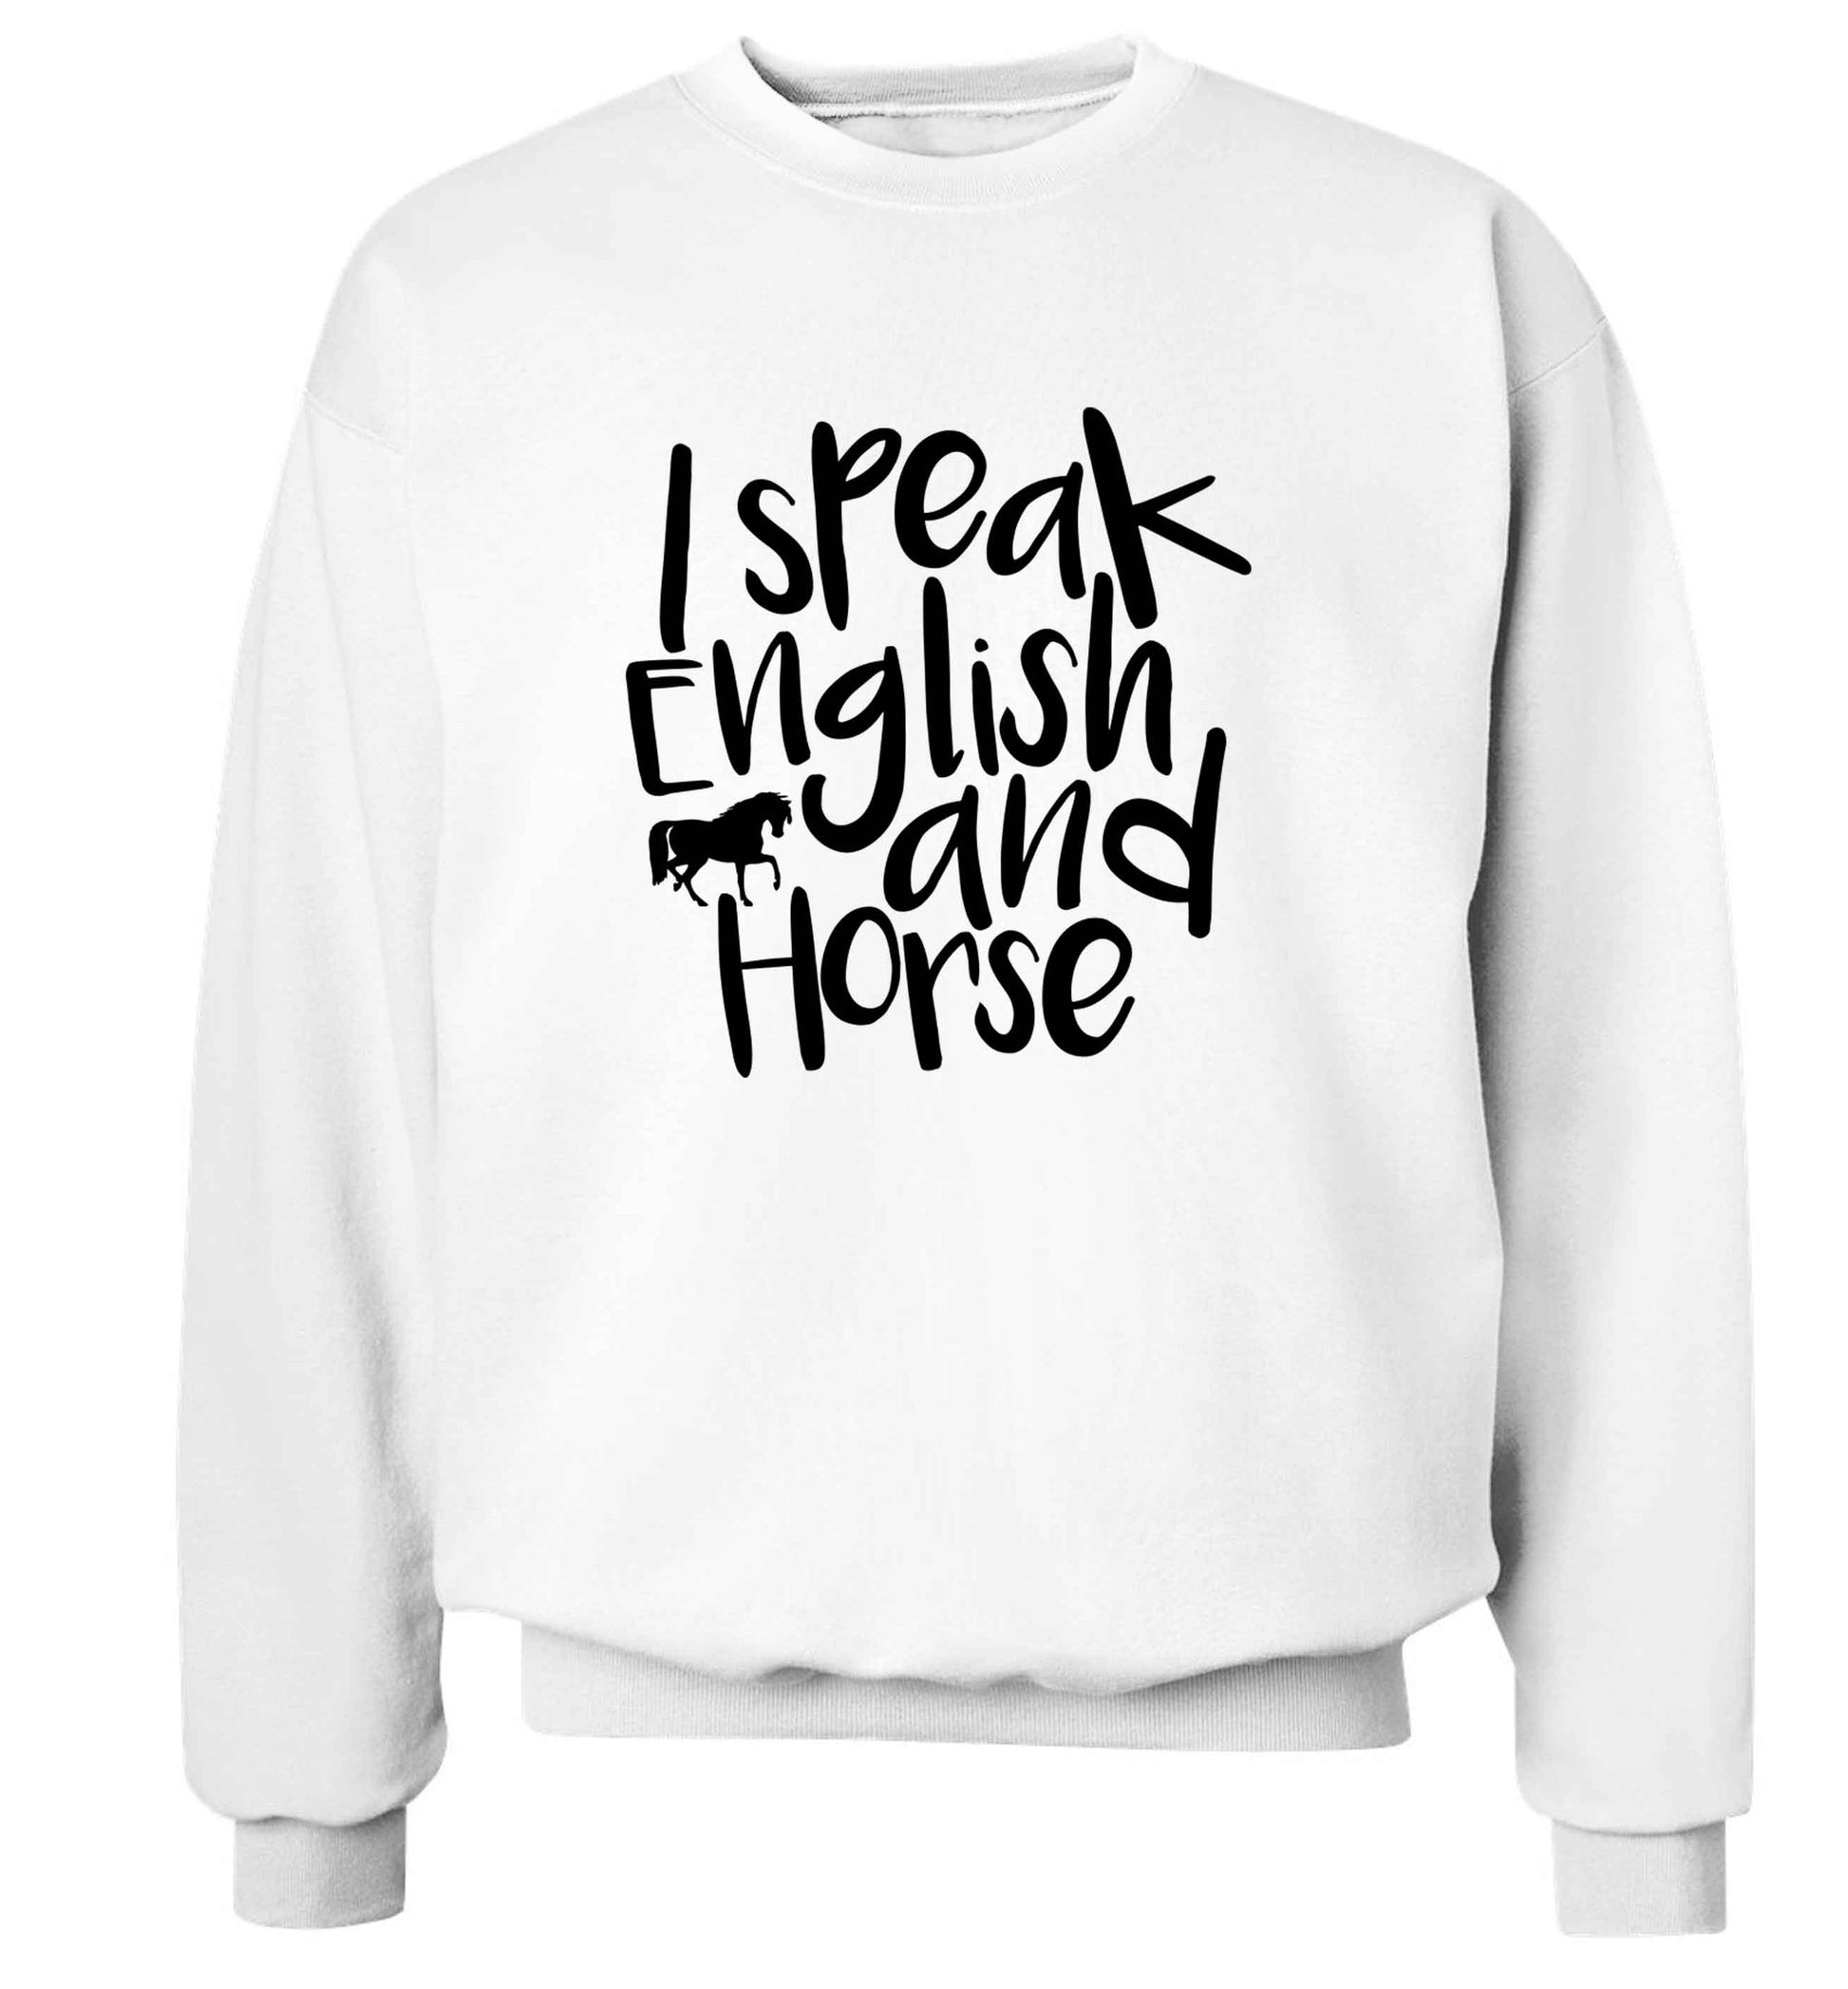 I speak English and horse adult's unisex white sweater 2XL